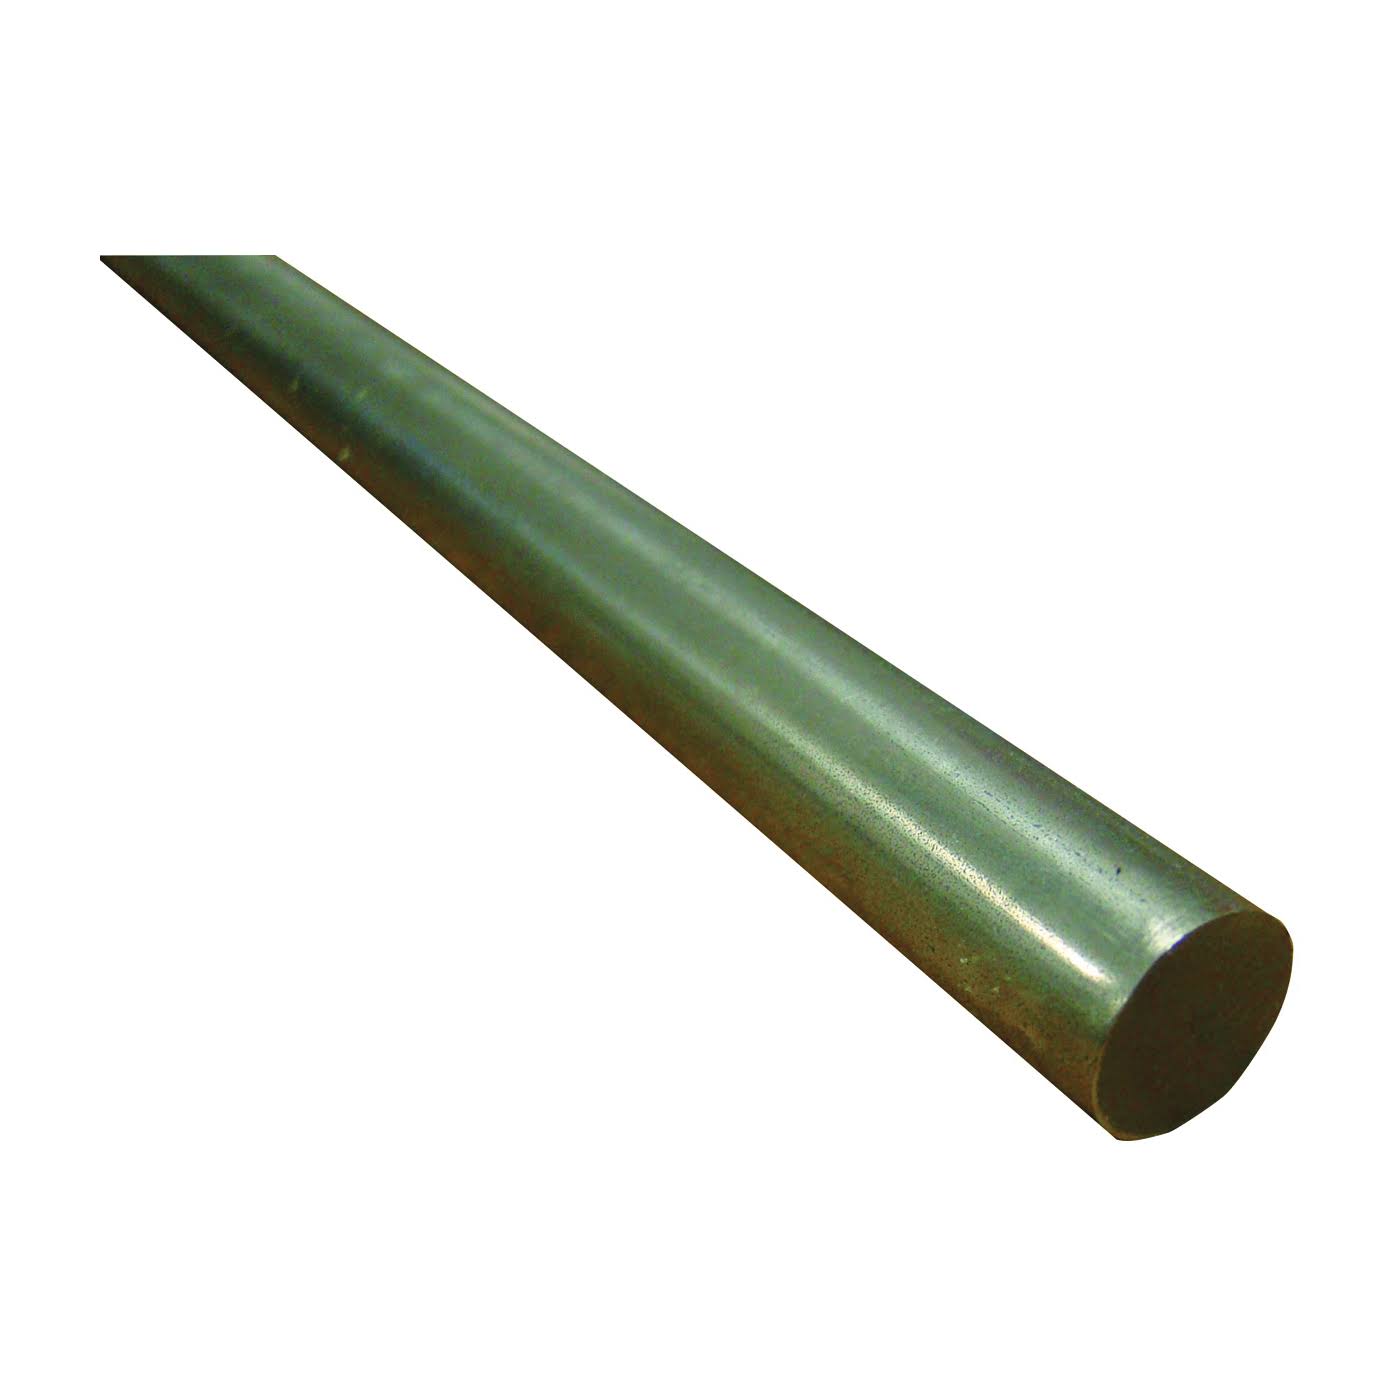 12" Round Steel Rod 1/4" (Pk1)